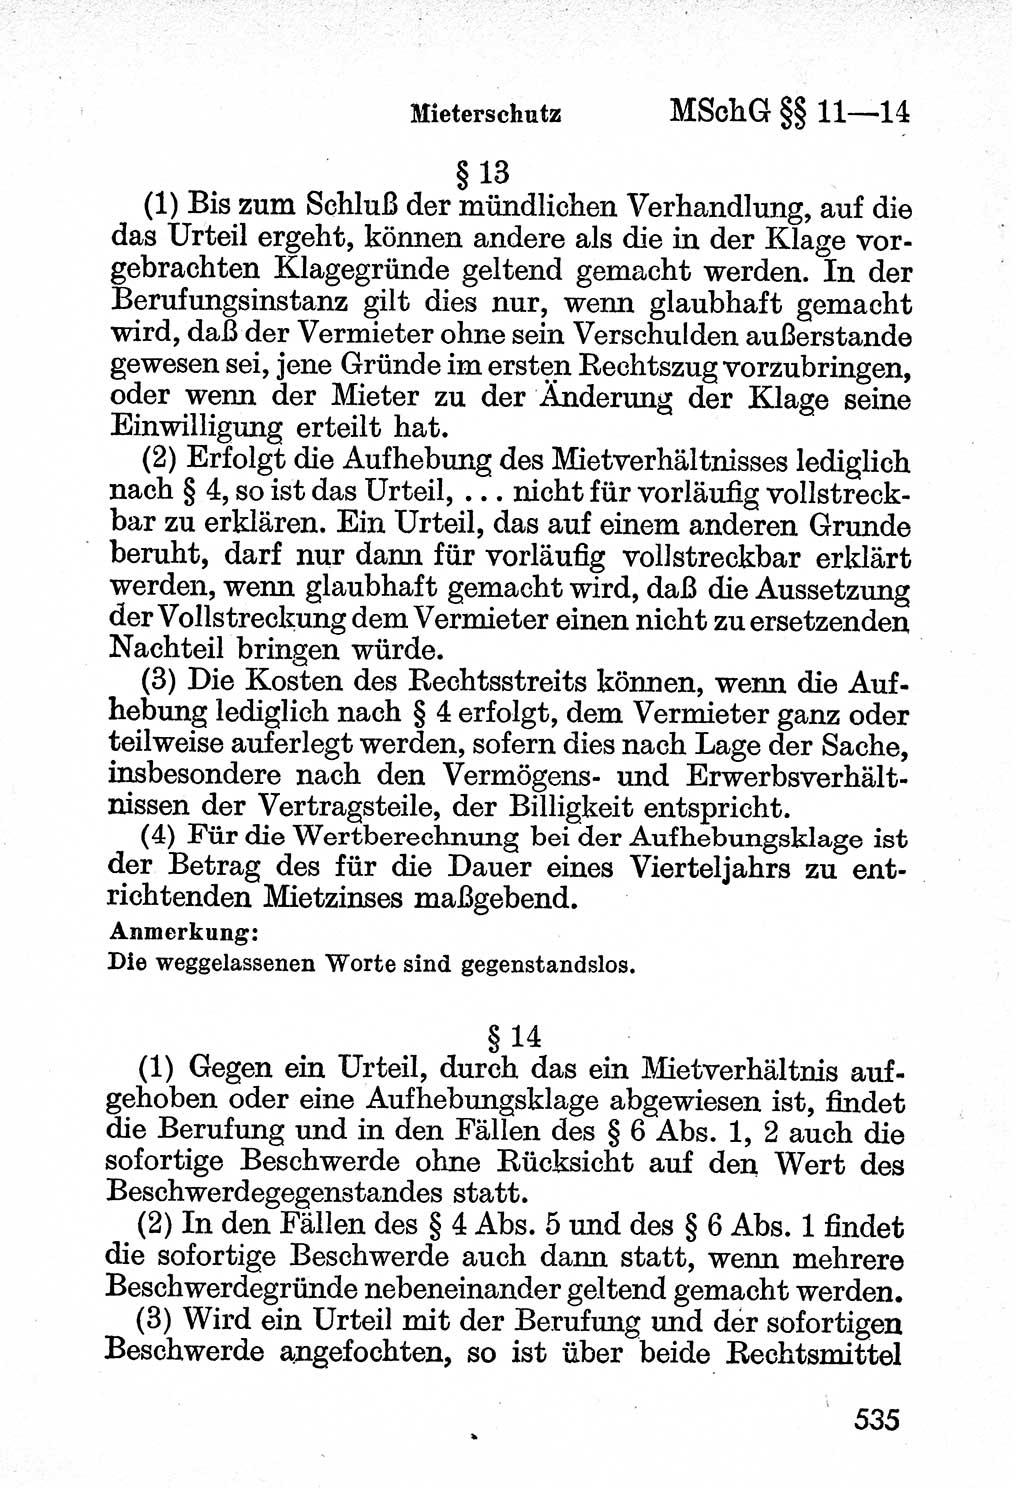 Bürgerliches Gesetzbuch (BGB) nebst wichtigen Nebengesetzen [Deutsche Demokratische Republik (DDR)] 1956, Seite 535 (BGB Nebenges. DDR 1956, S. 535)